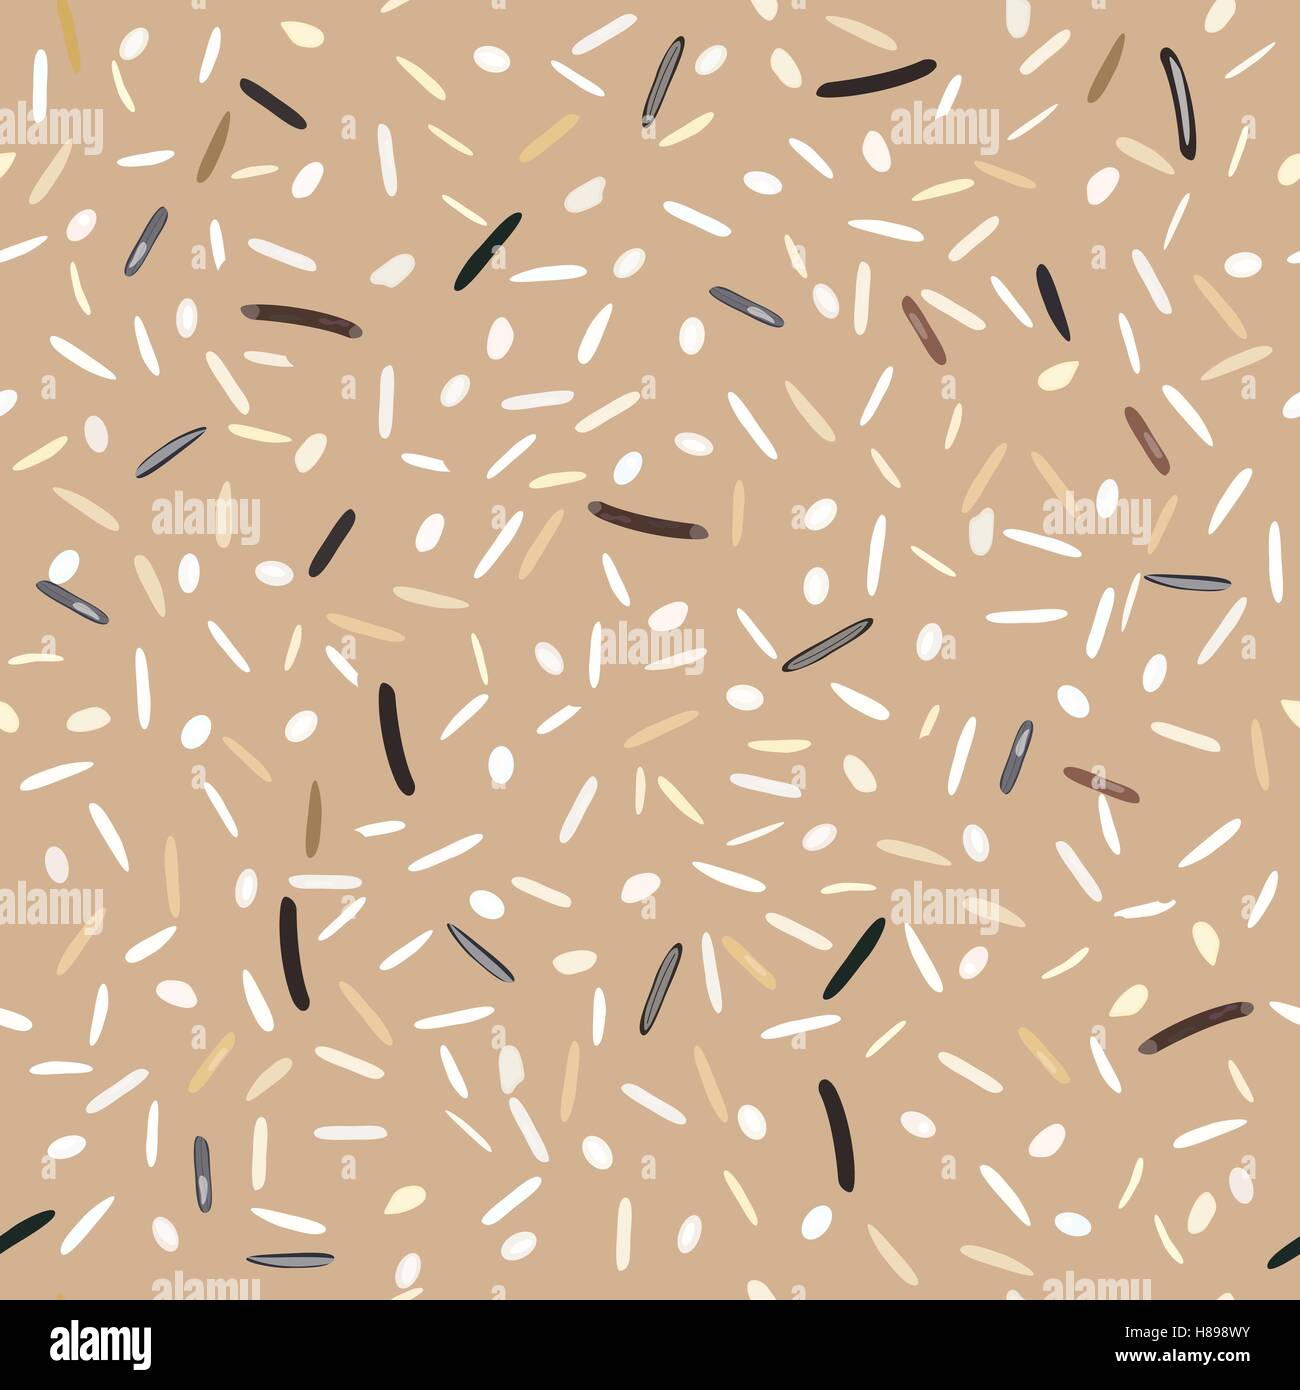 Motif transparente différents types de riz Basmati, jasmin, sauvages, long, brun, arborio sushi. Illustration vecteur EPS 10. Illustration de Vecteur